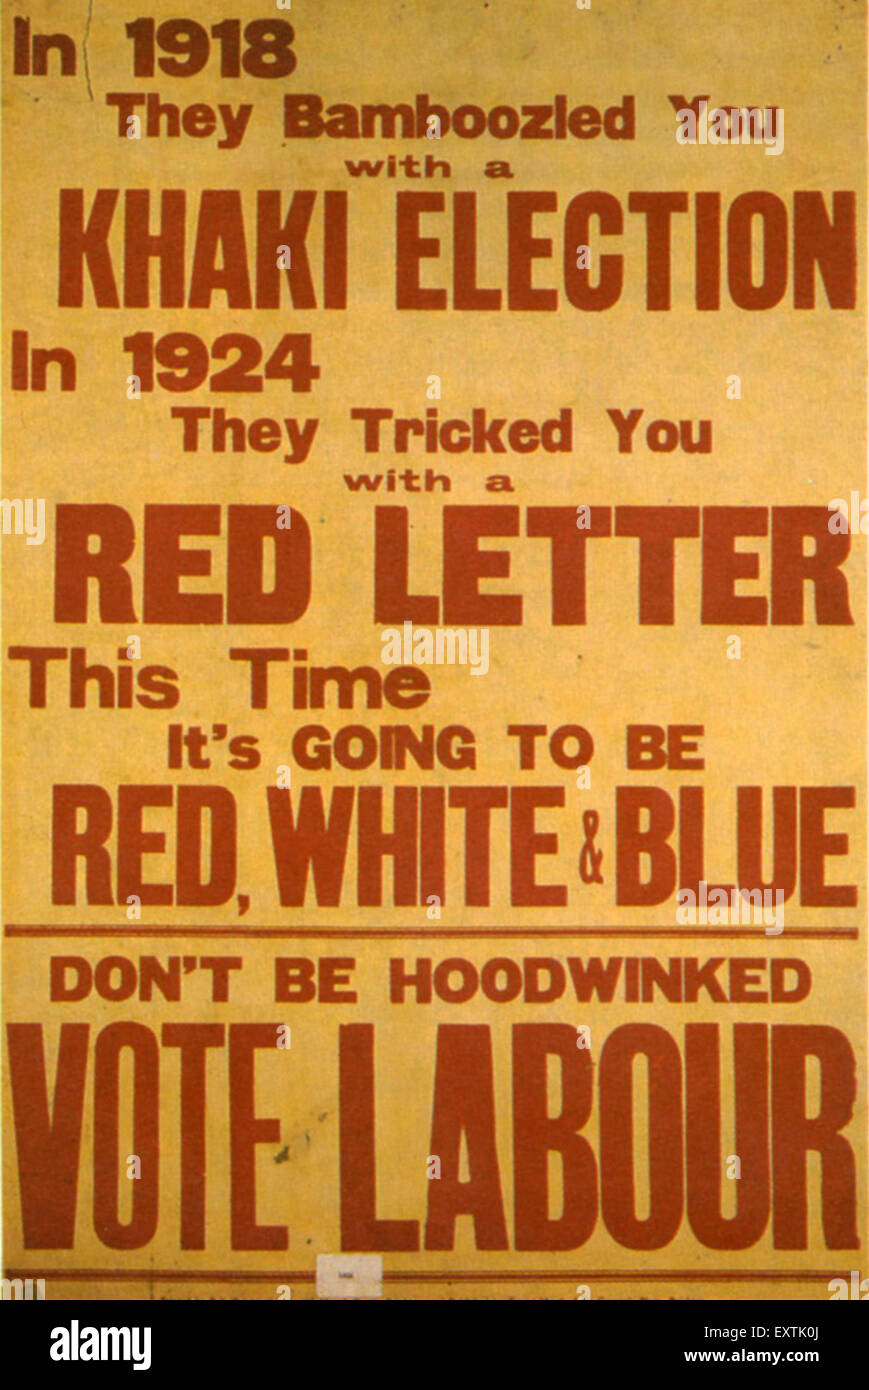 1920S UK Il Partito laburista Poster Foto Stock